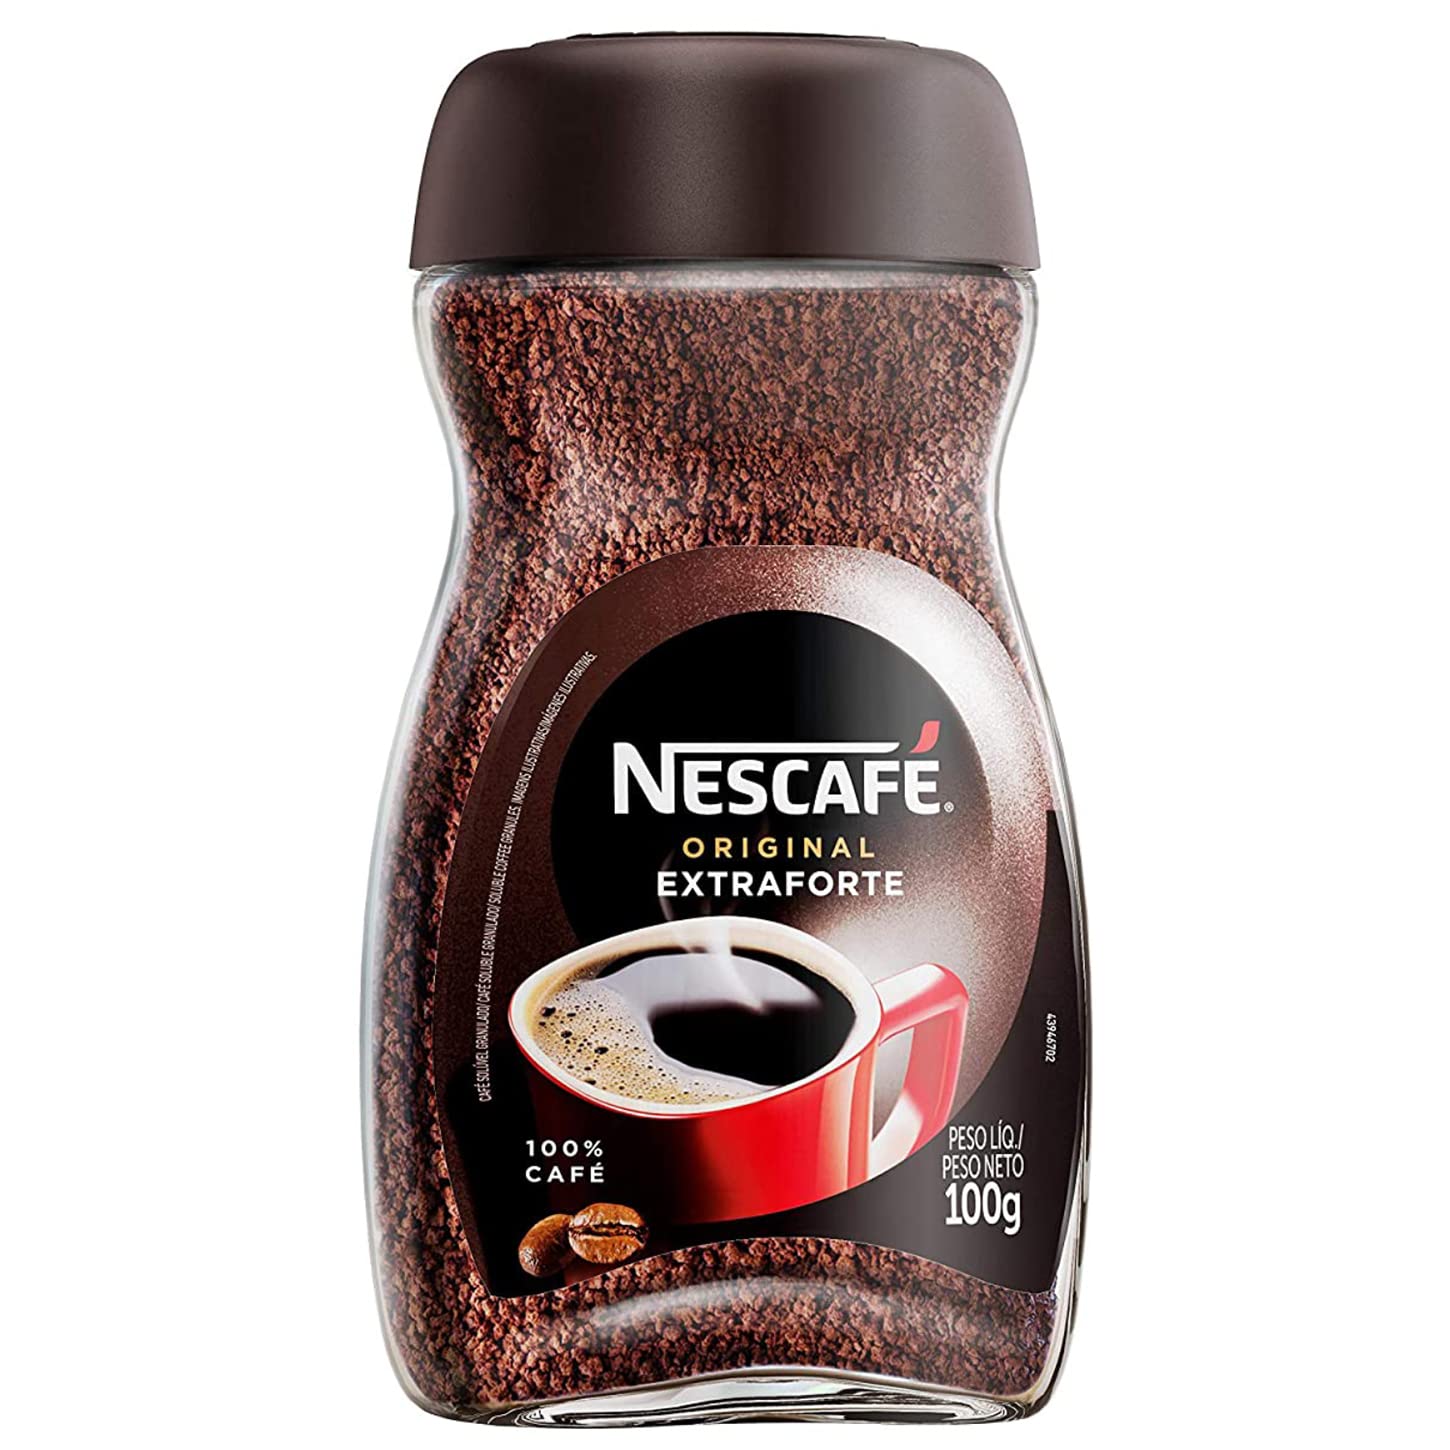 Nescafe Original Extraforts Ground Coffee Bottle, 230 g